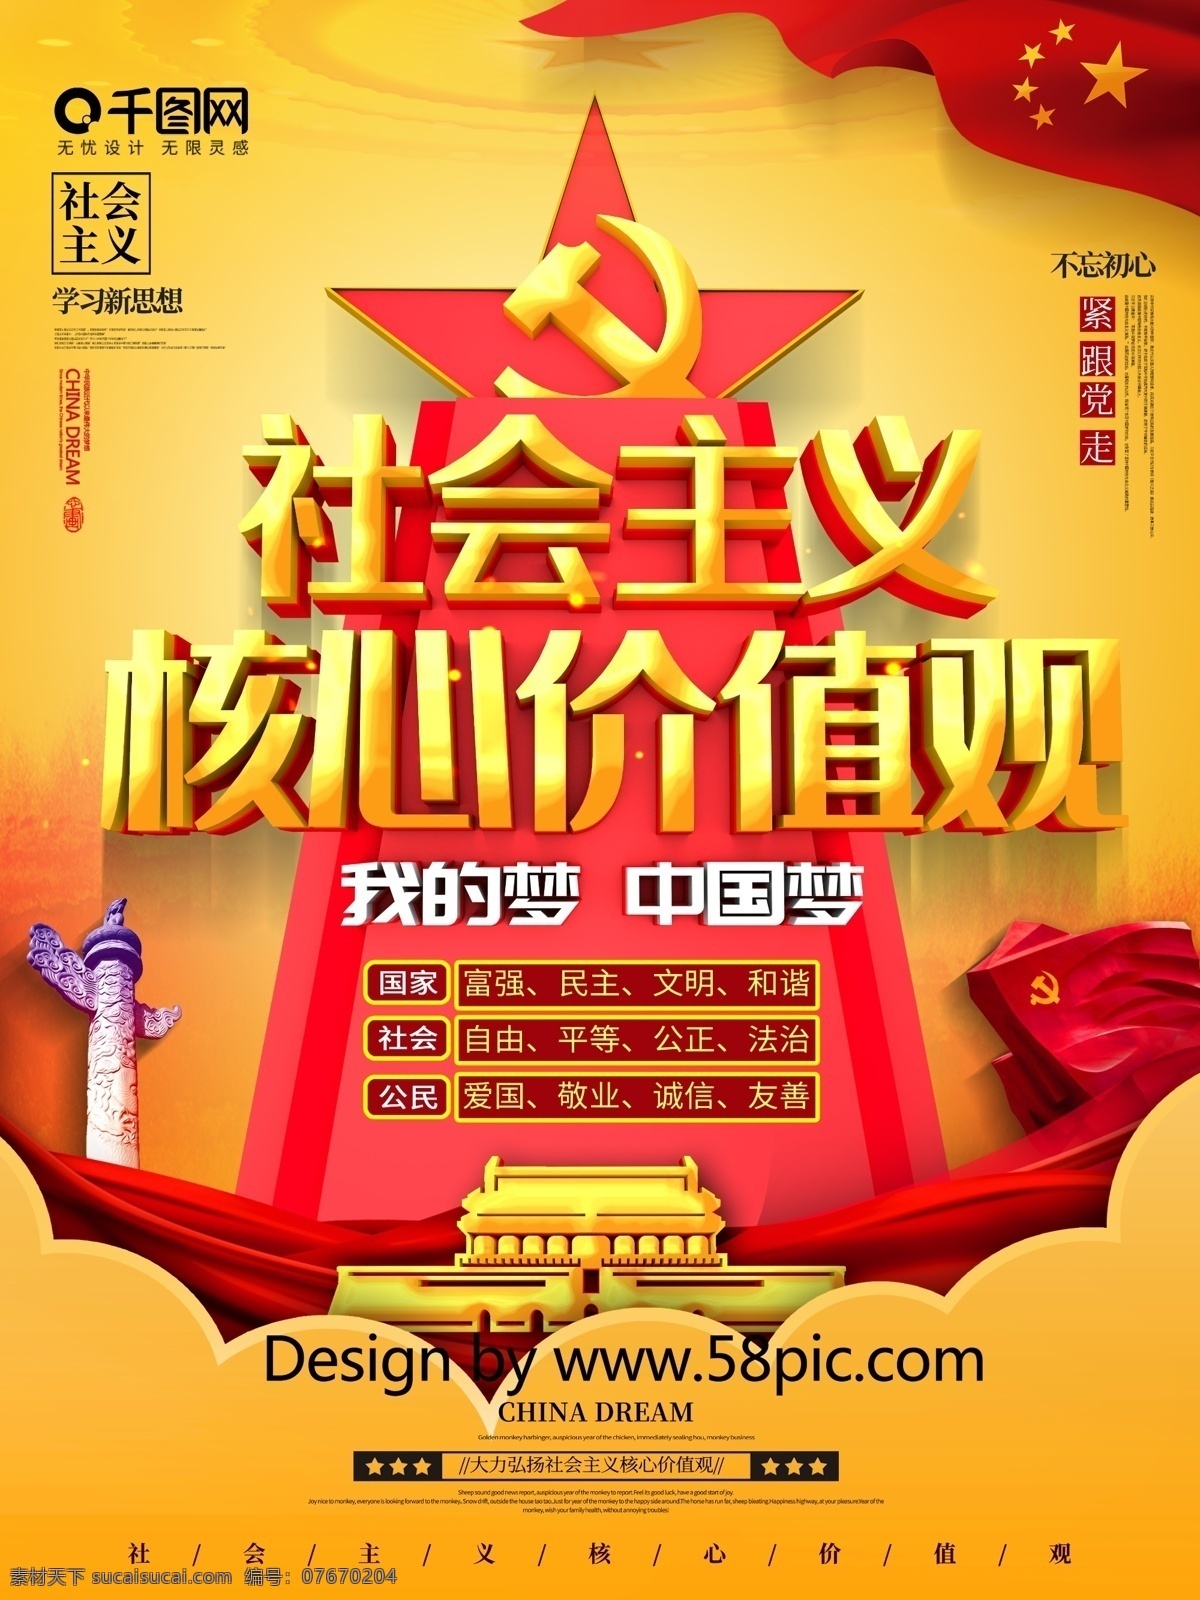 大气 c4d 弘扬 社会主义 核心 价值观 海报 核心价值观 中国梦 构建和谐社会 新思想 紧跟党走 价值观海报